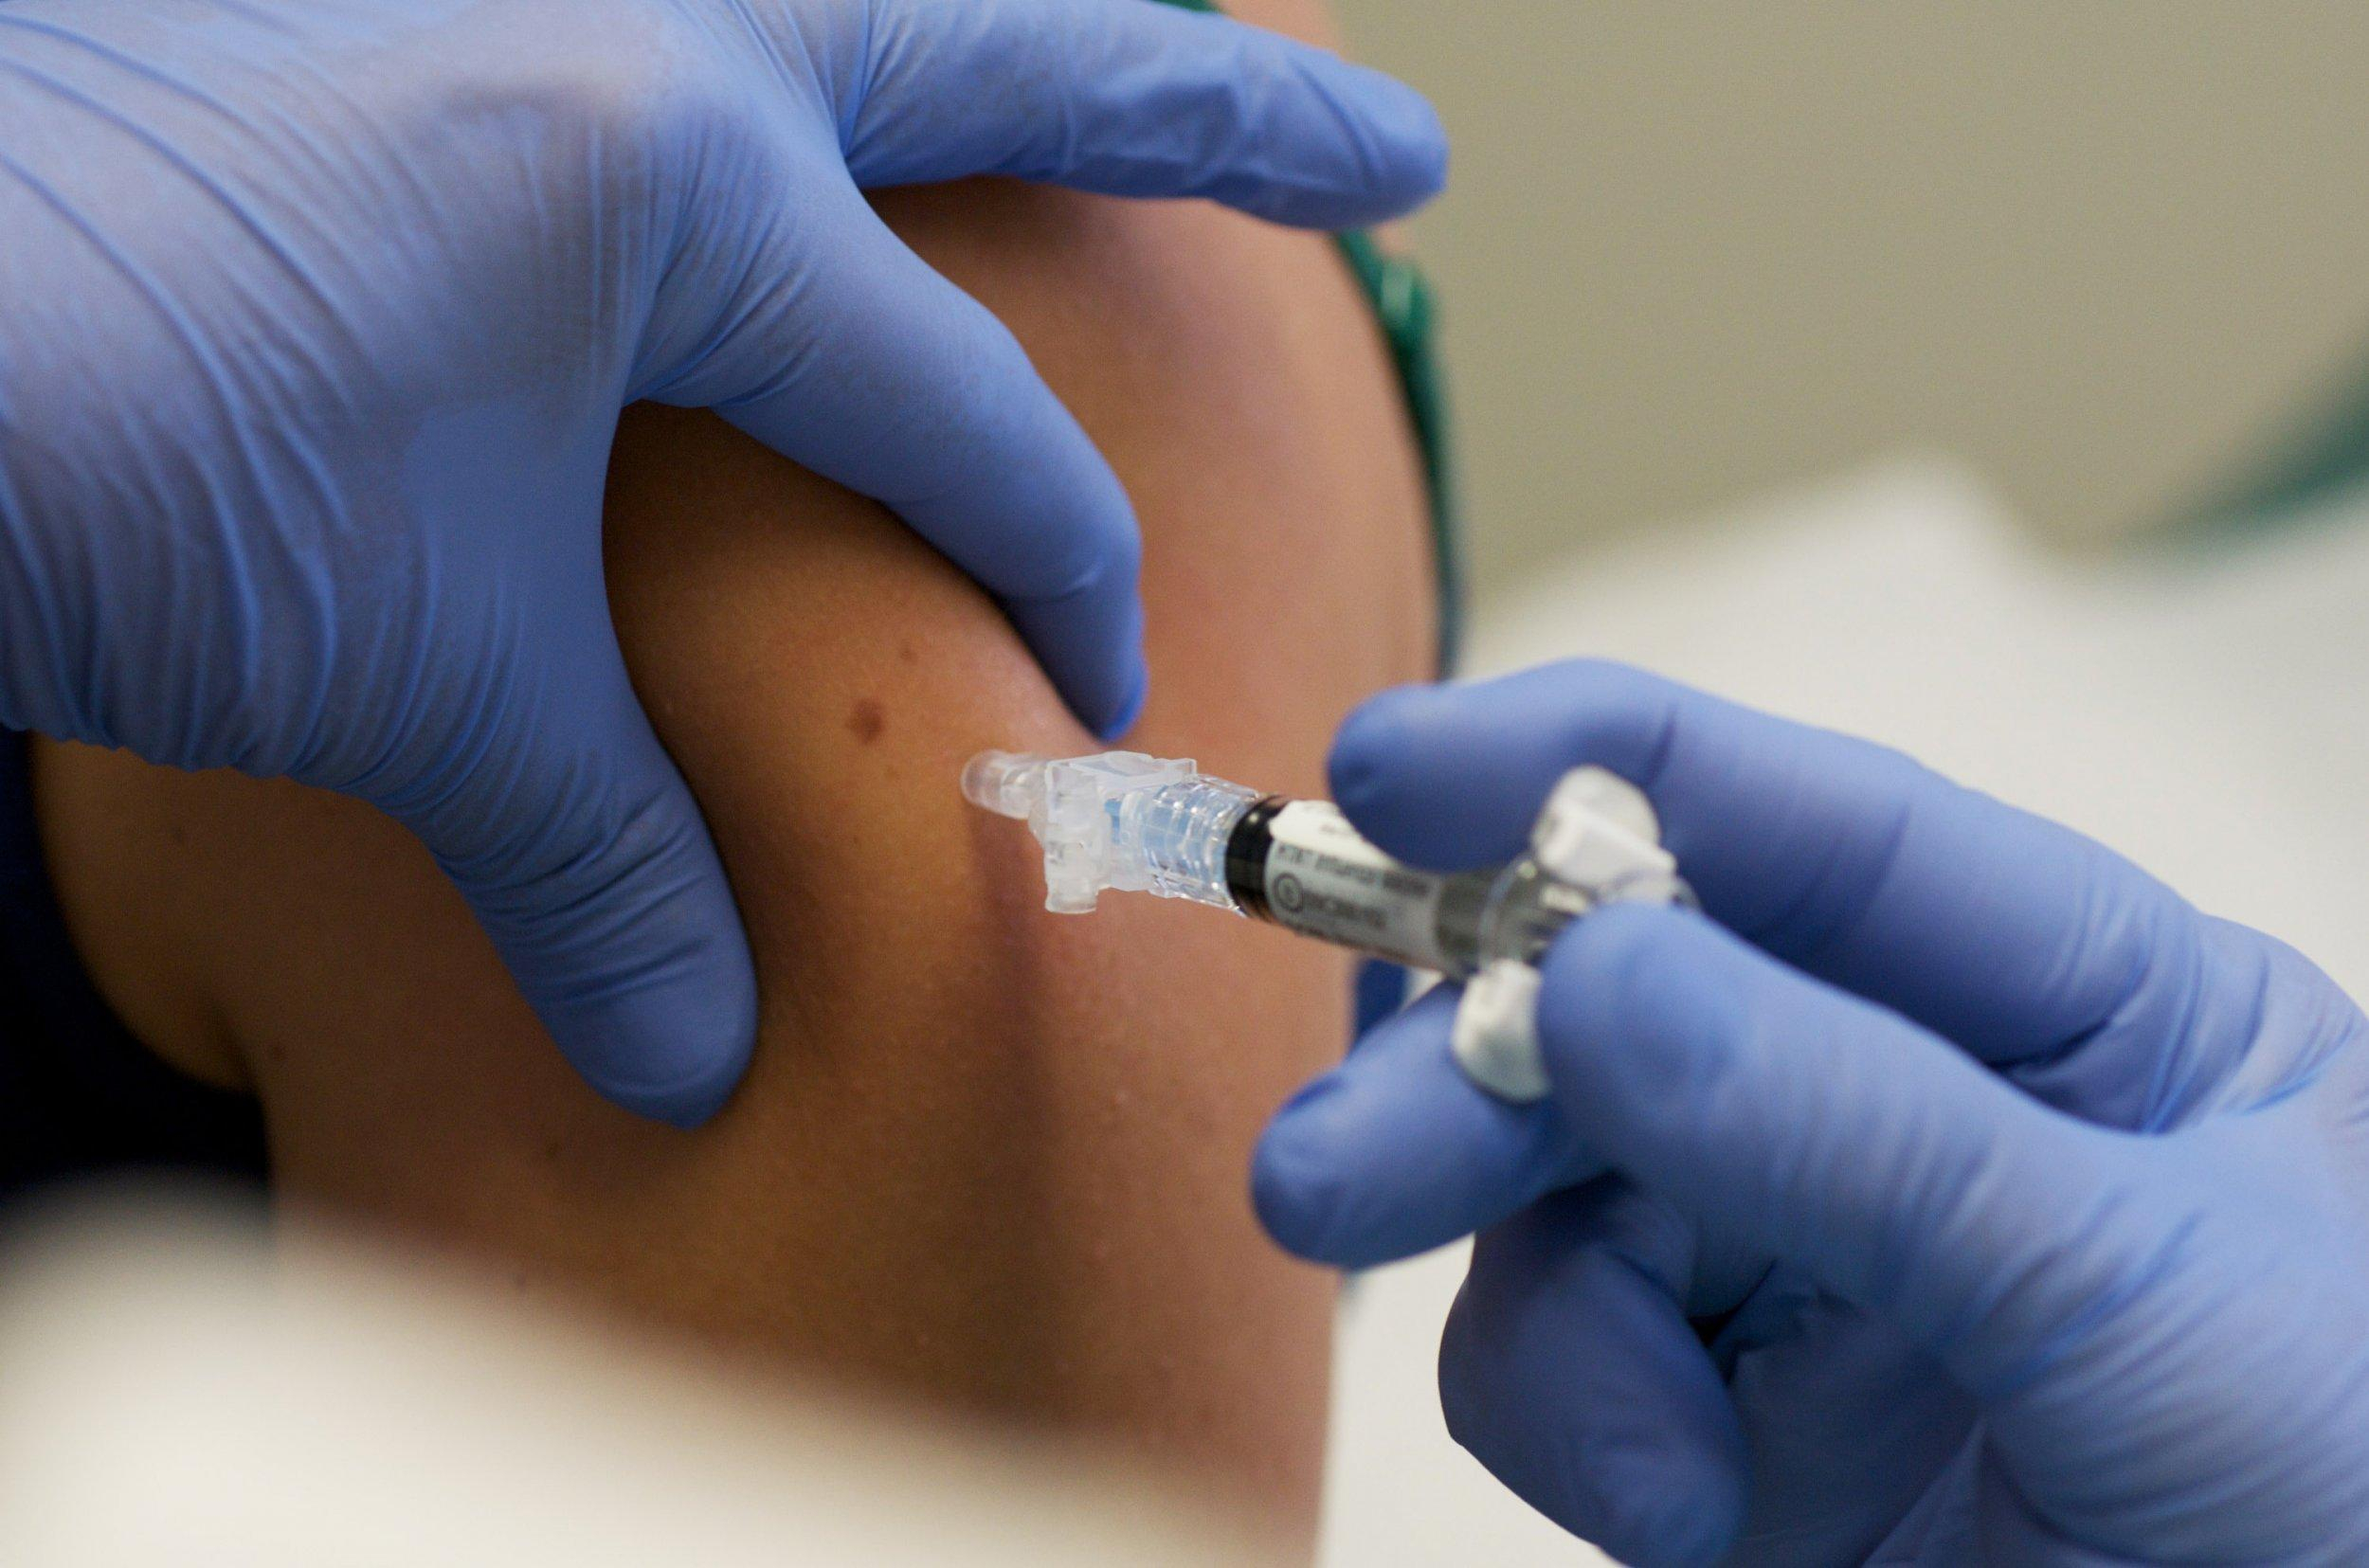 Схожі до другої: у CDC розповіли про побічні дії третьої дози COVID-вакцин - Новини Здоров’я